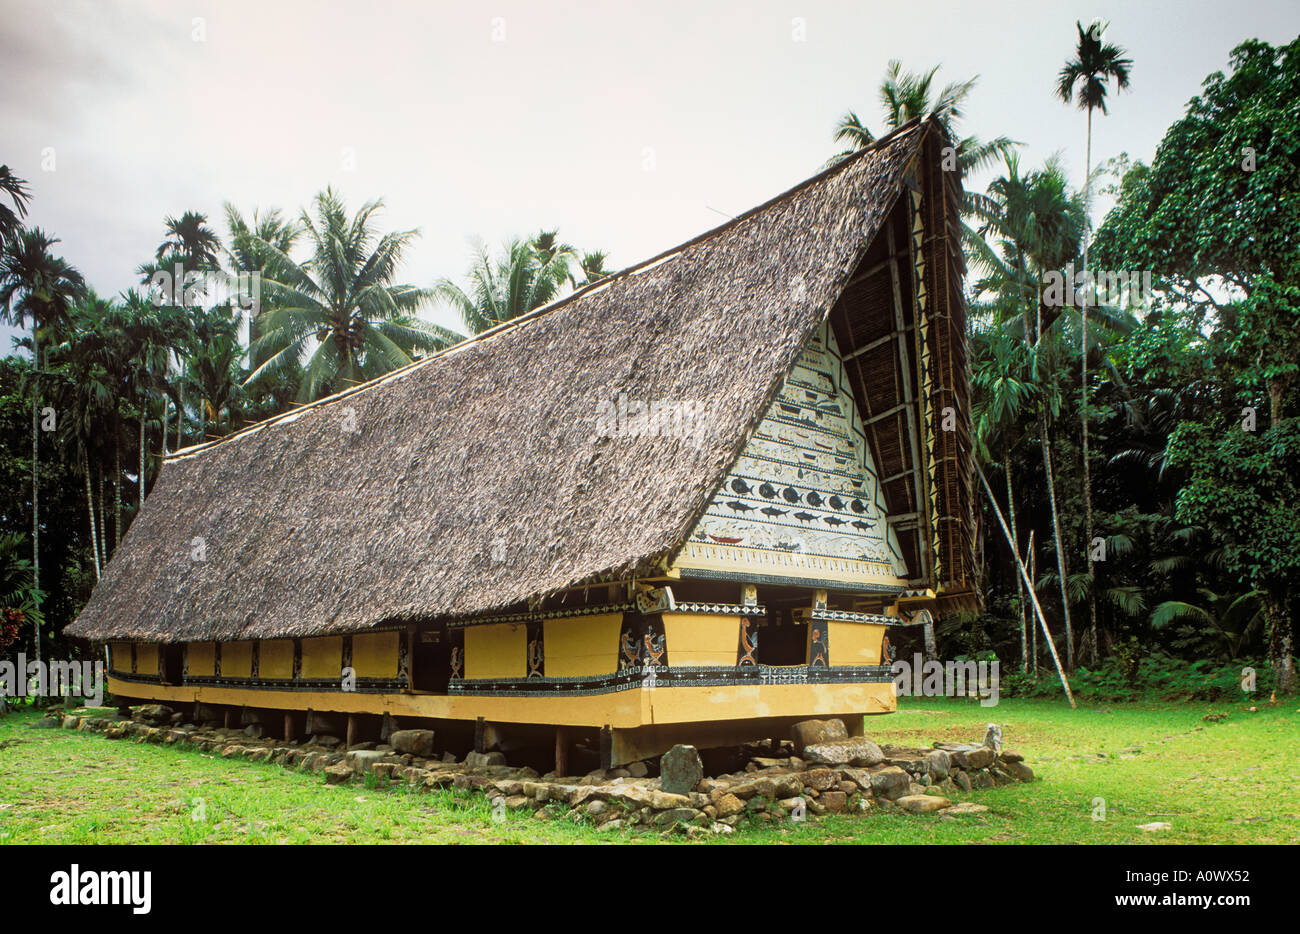 Palau Mikronesien ein Bai traditionelles Dorf Begegnungszentrum in Airai Babeldaob Insel Stockfoto